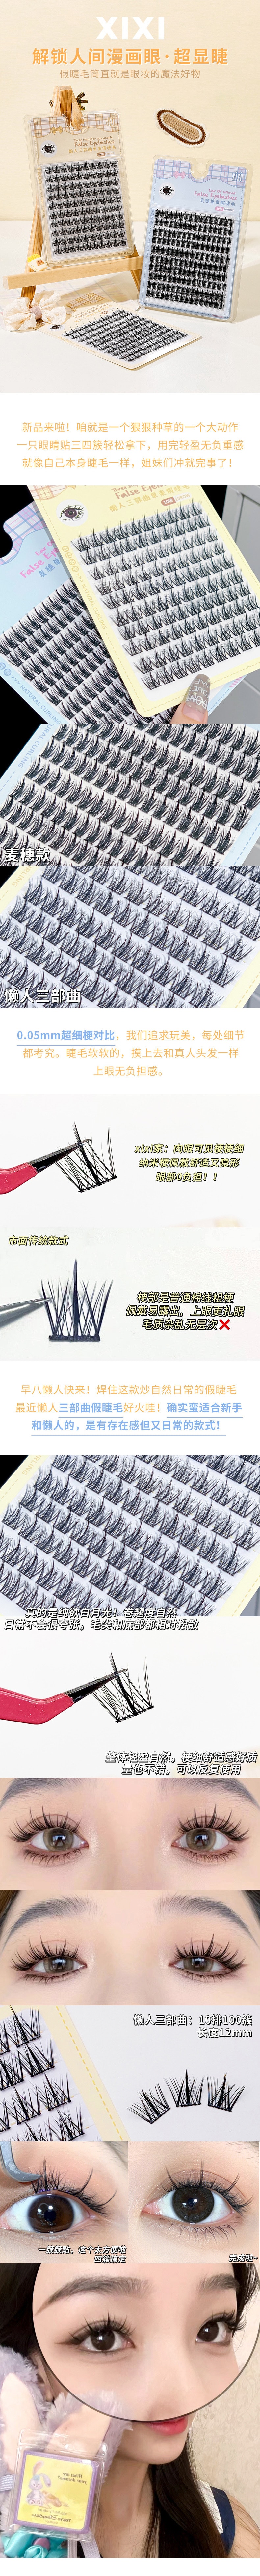 中國 xixi【新款】10排大容量超細梗分段式睫毛 #懶人三部曲 送美睫4件